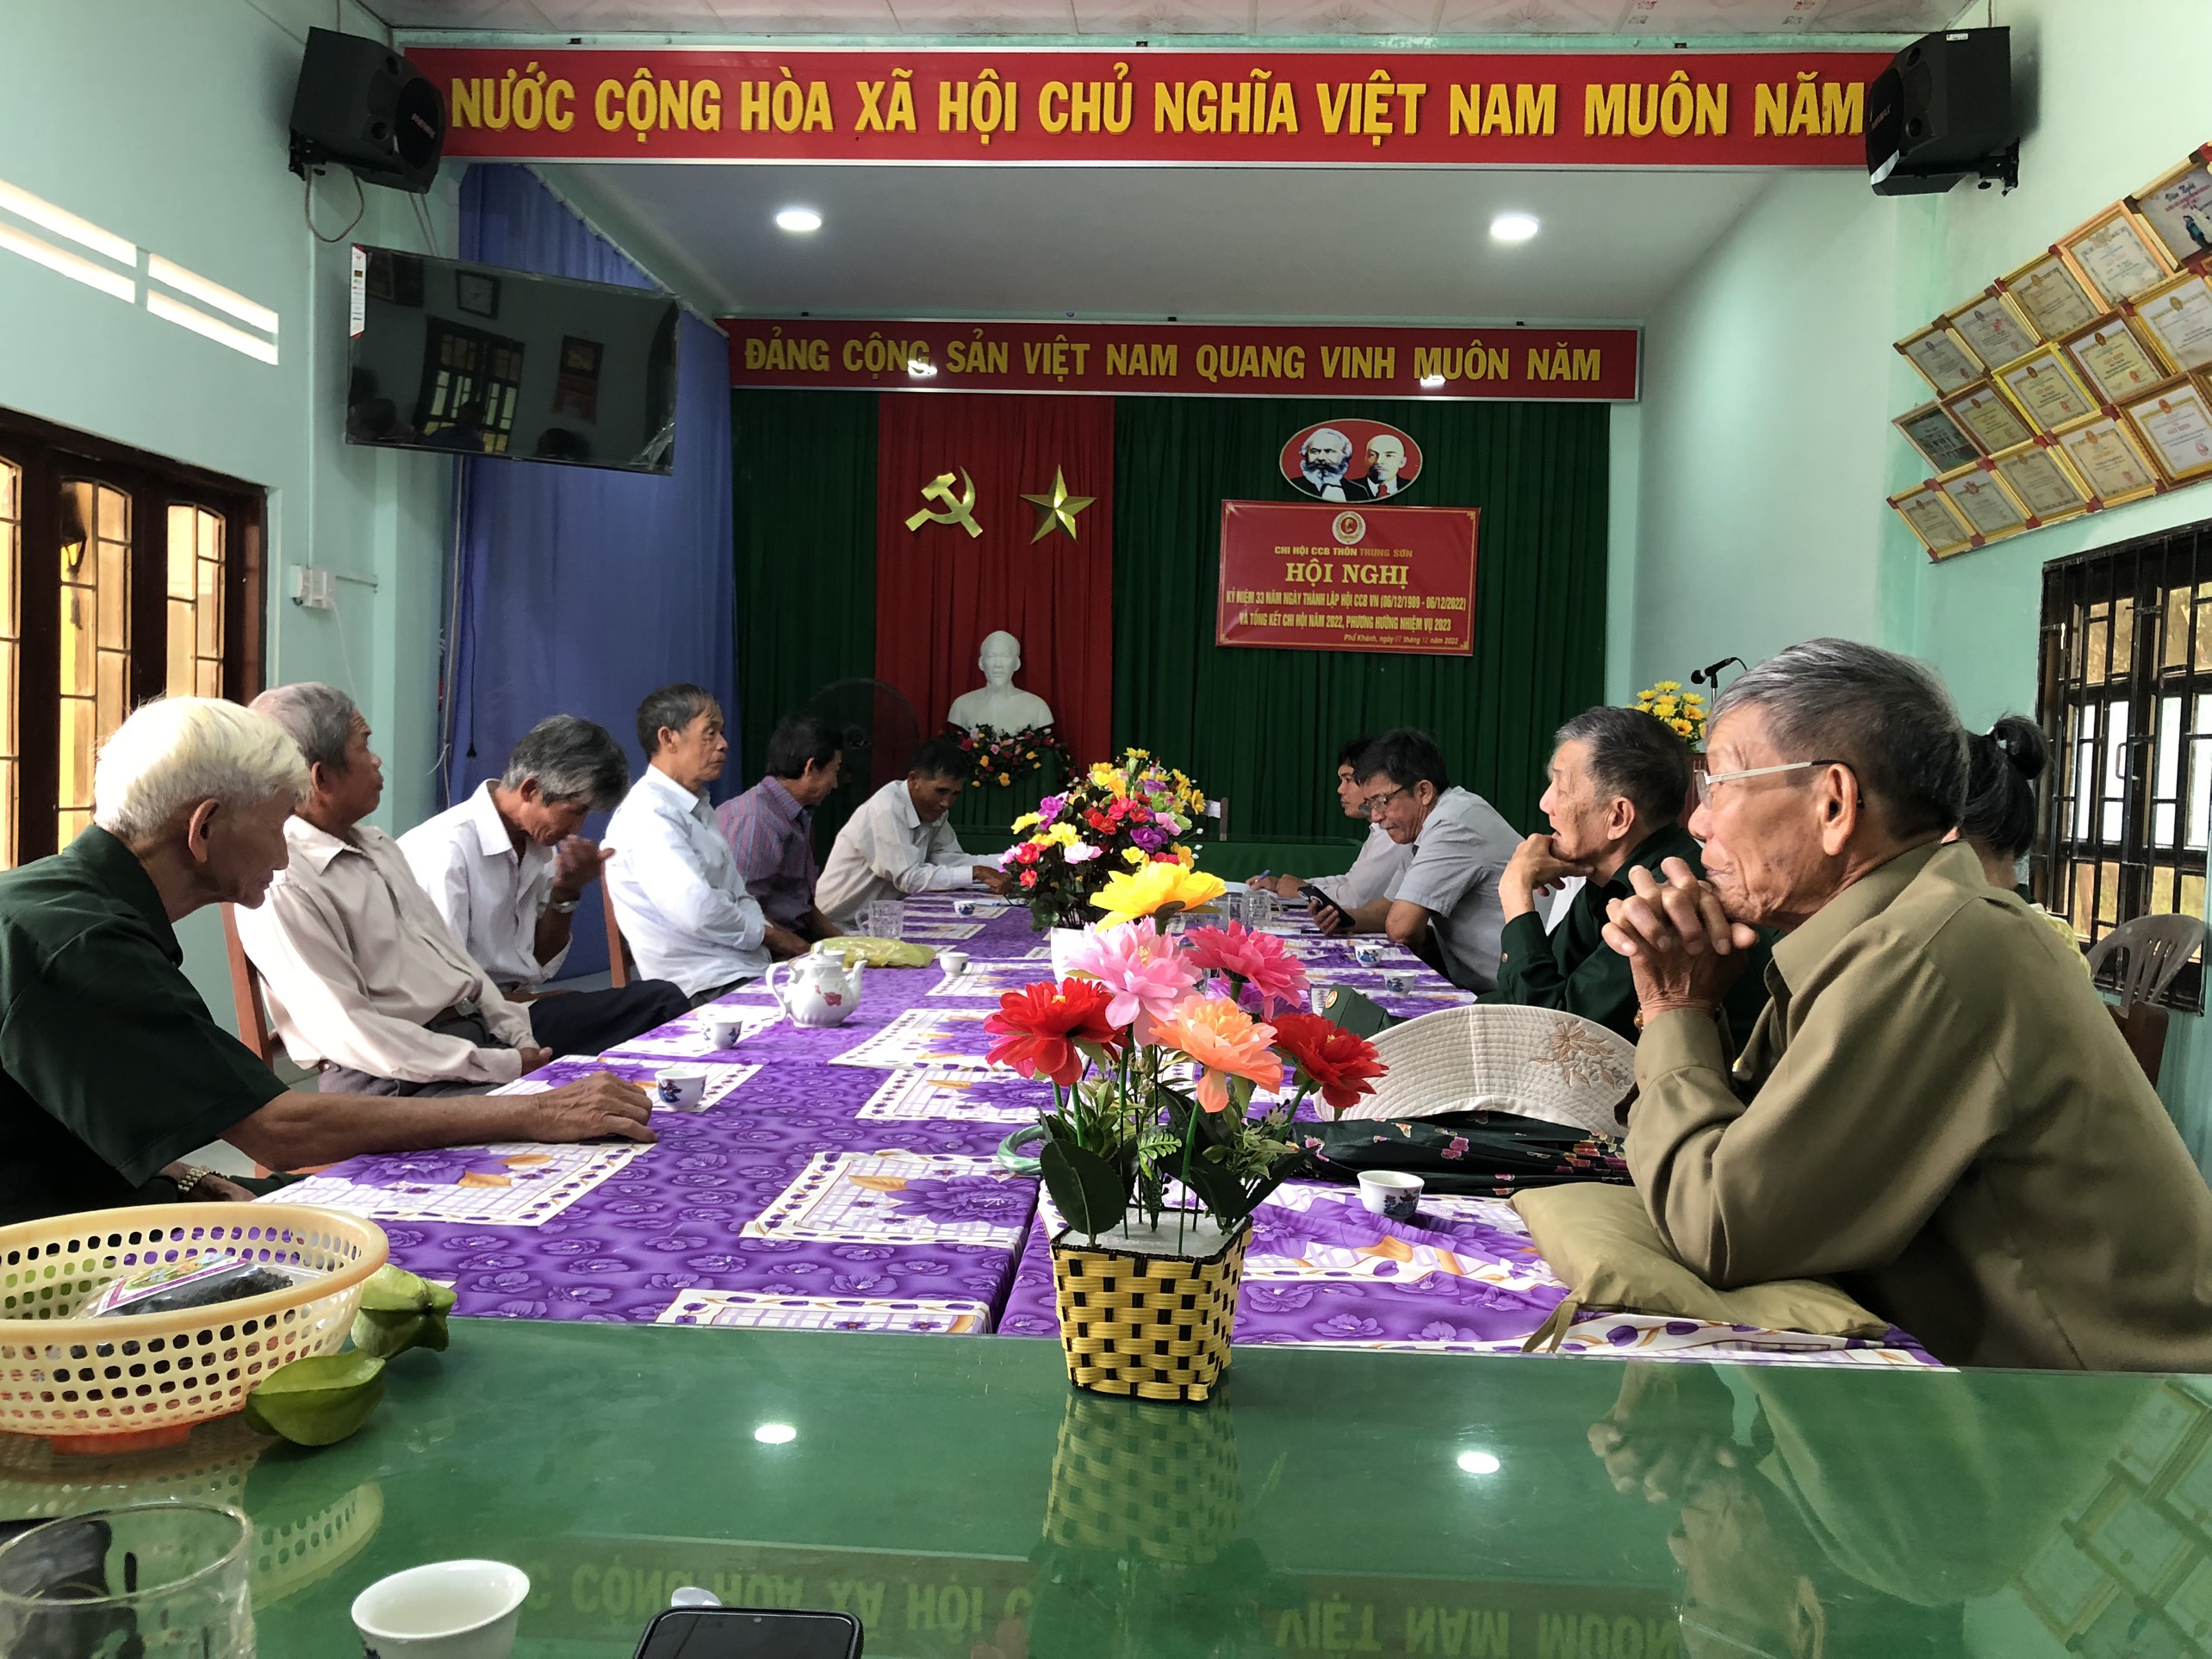 Phổ Khánh: các chi hội cựu chiến binh tổ chức lễ kỷ niệm 33 năm ngày thành lập hội cựu chiến binh Việt Nam (6/12/1989- 6/12/2022), tổng kết công tác hội năm 2022 và đề ra phương hướng năm 2023